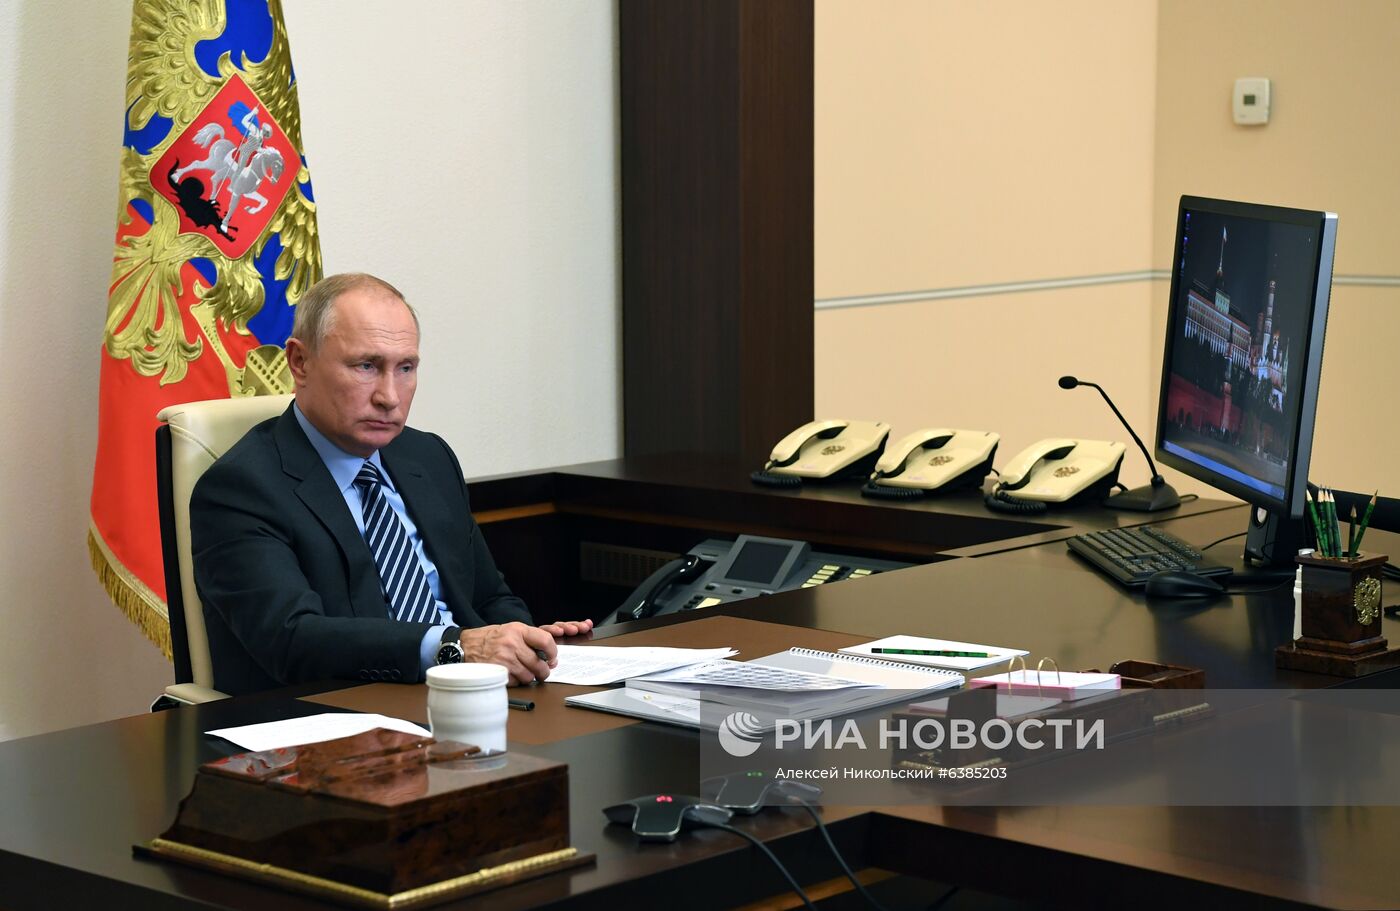 Президент РФ В. Путин провел заседание попечительского совета образовательного фонда "Талант и успех"